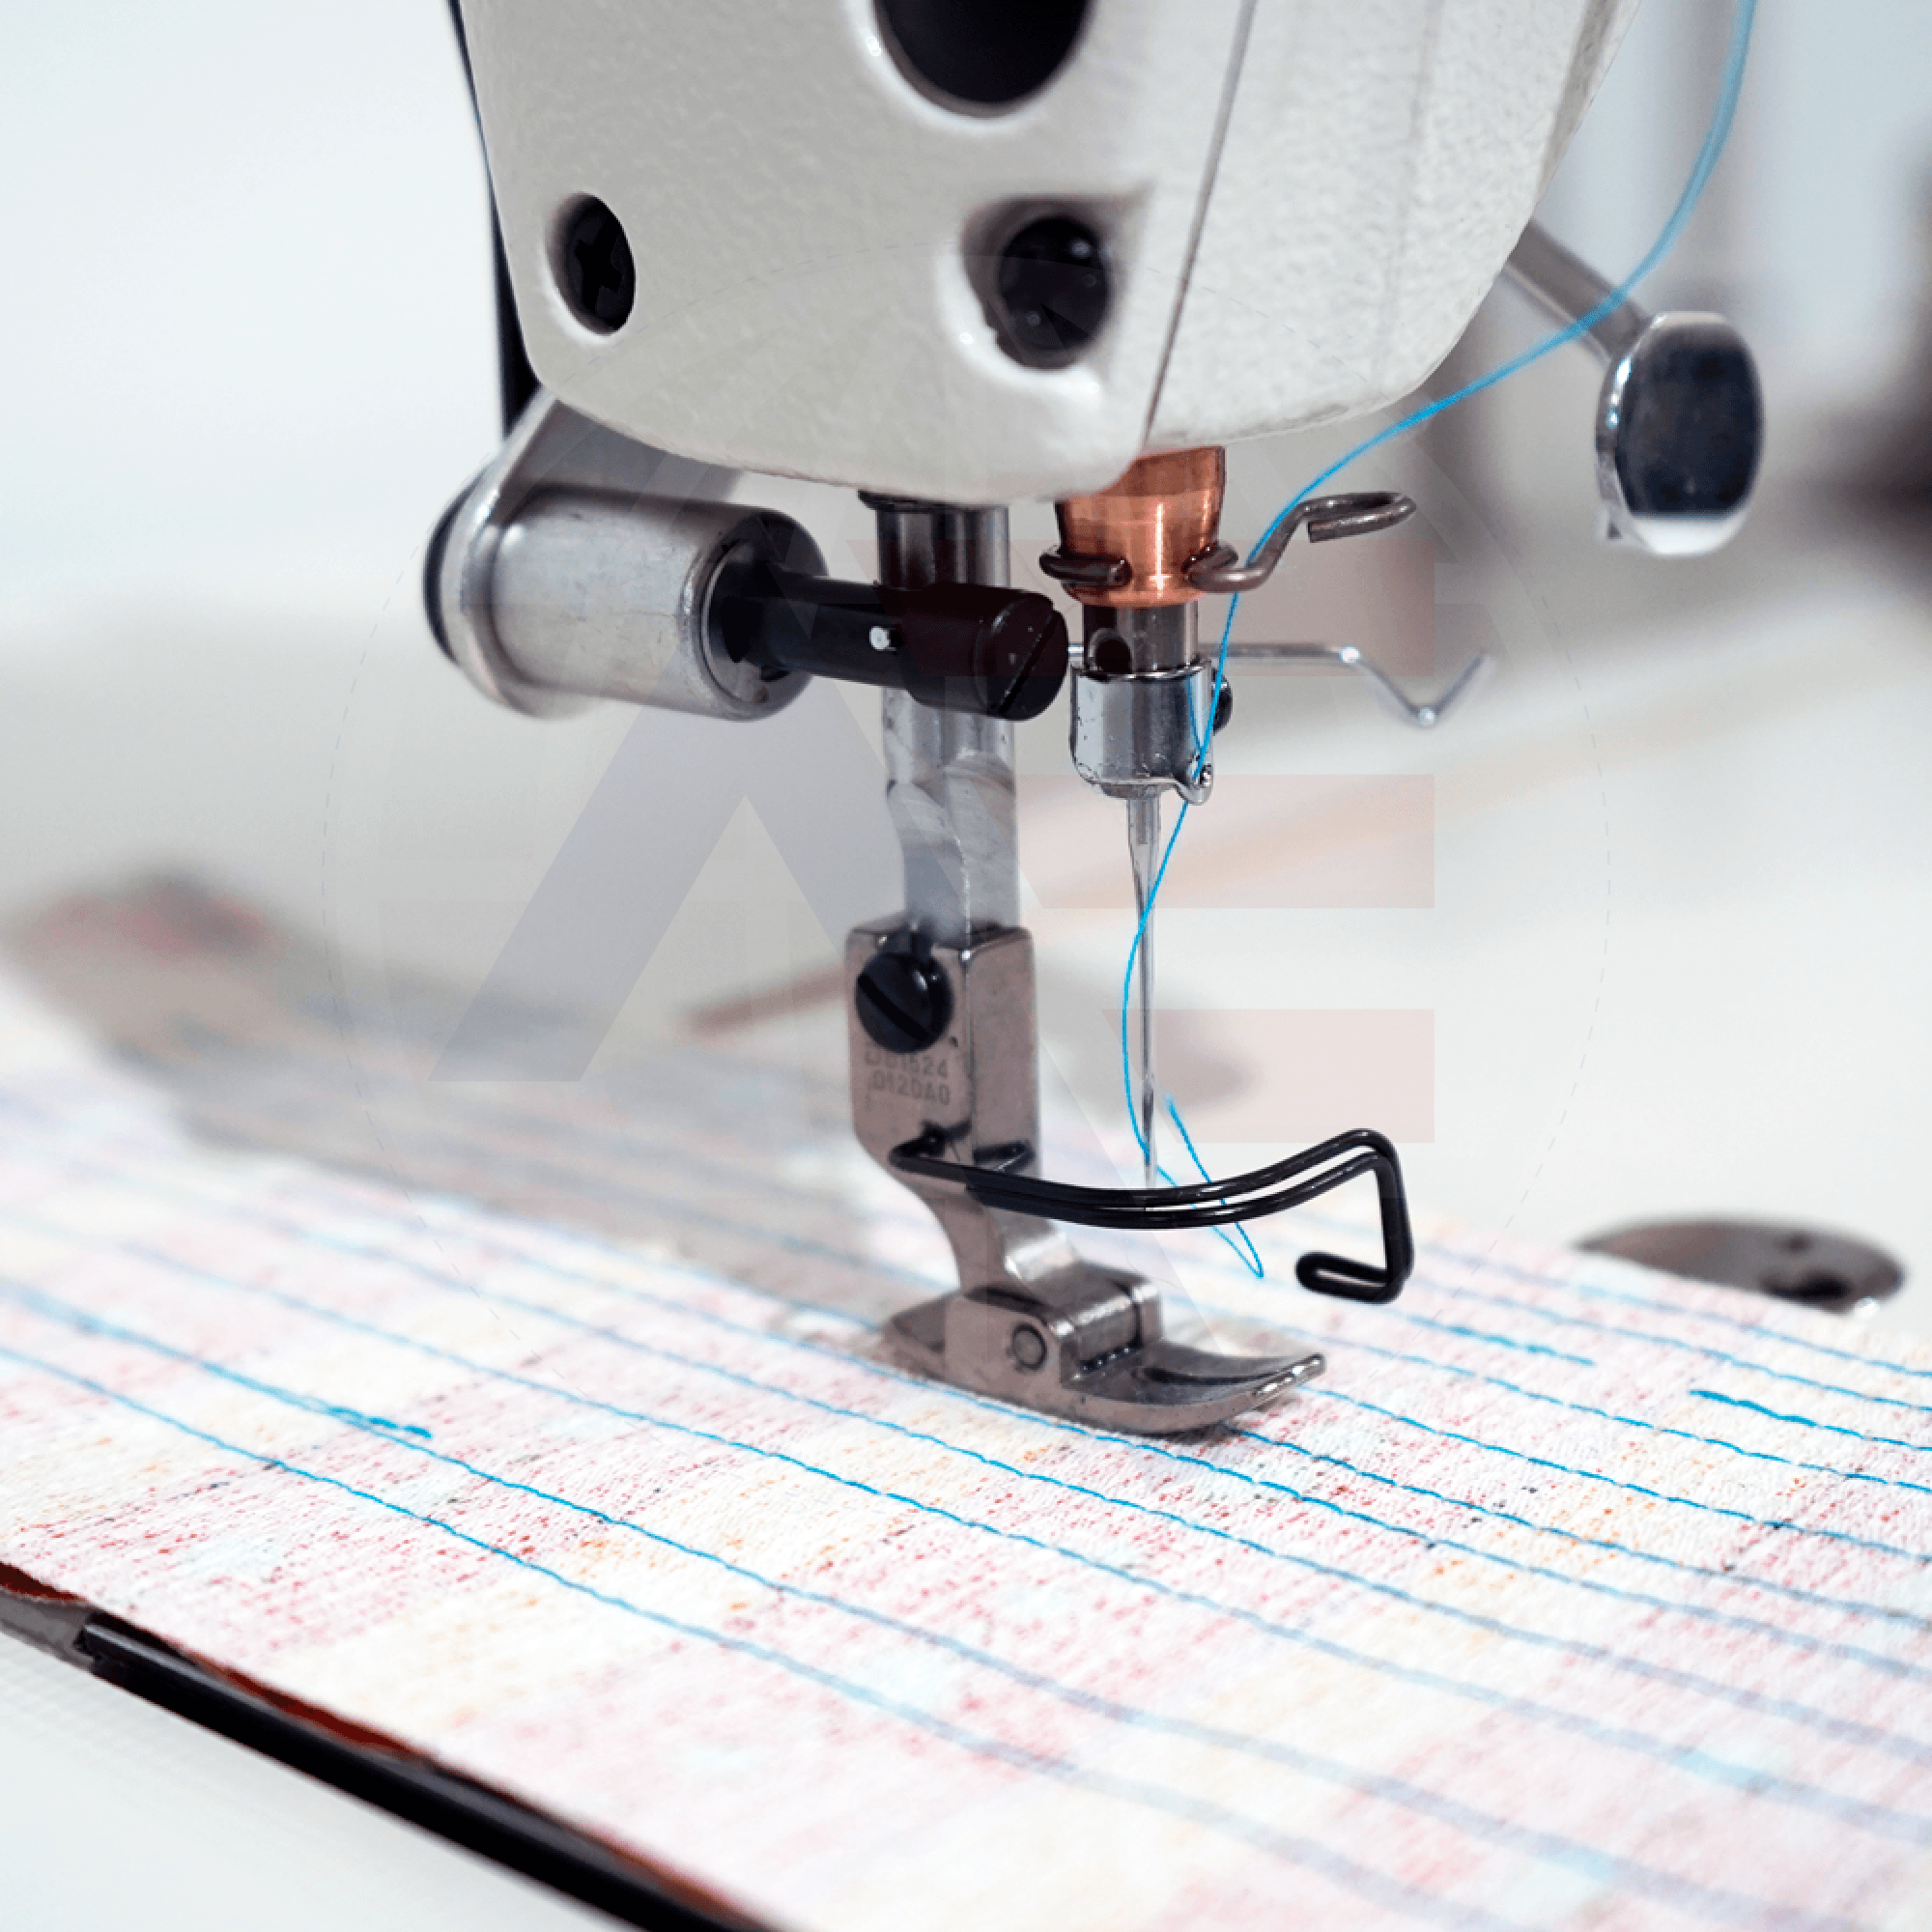 Br-8700 Single Needle Lockstitch Electric Sewing Machine - China